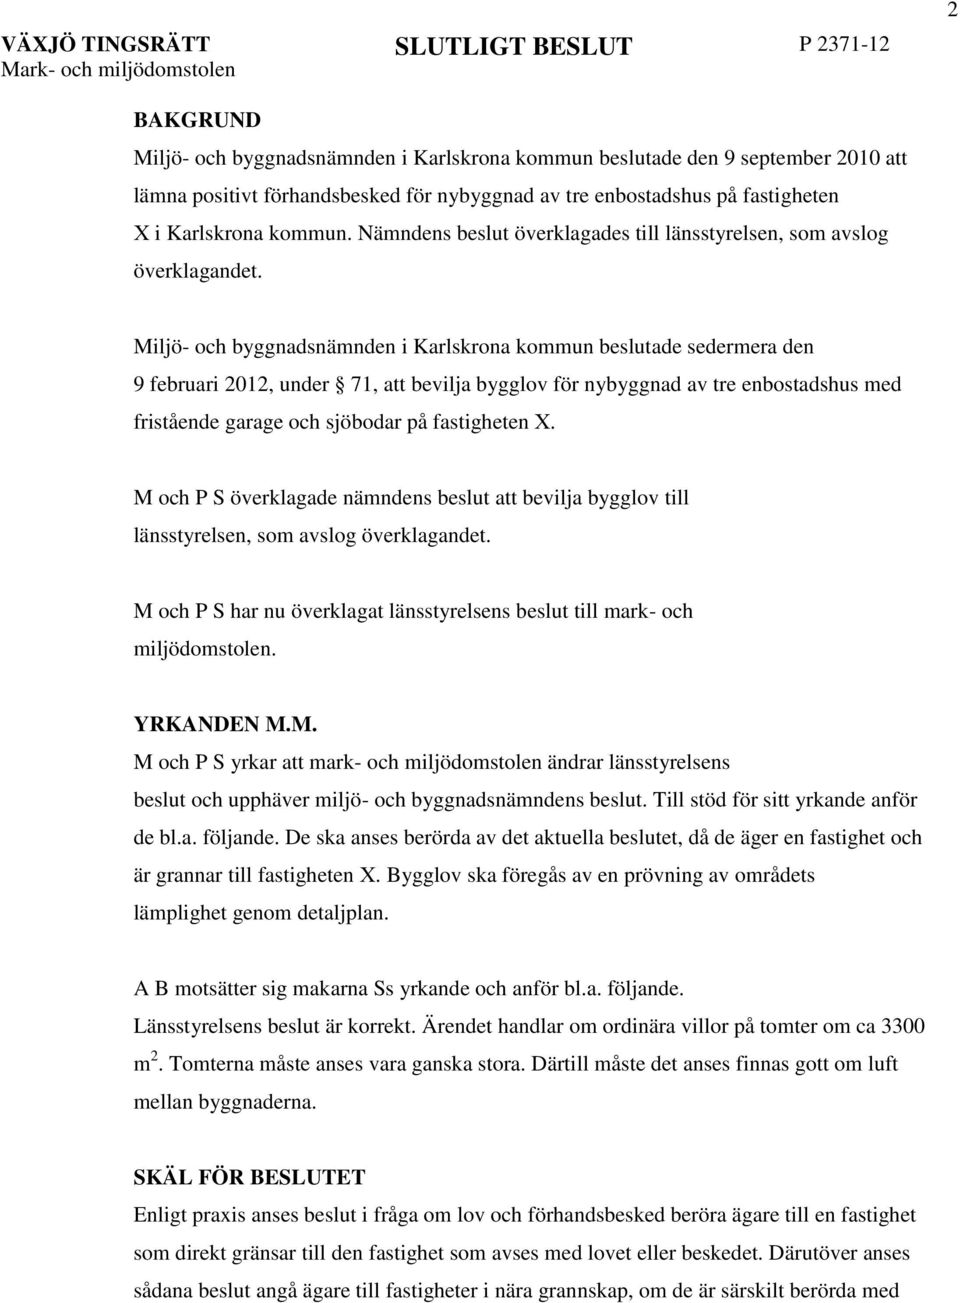 Miljö- och byggnadsnämnden i Karlskrona kommun beslutade sedermera den 9 februari 2012, under 71, att bevilja bygglov för nybyggnad av tre enbostadshus med fristående garage och sjöbodar på